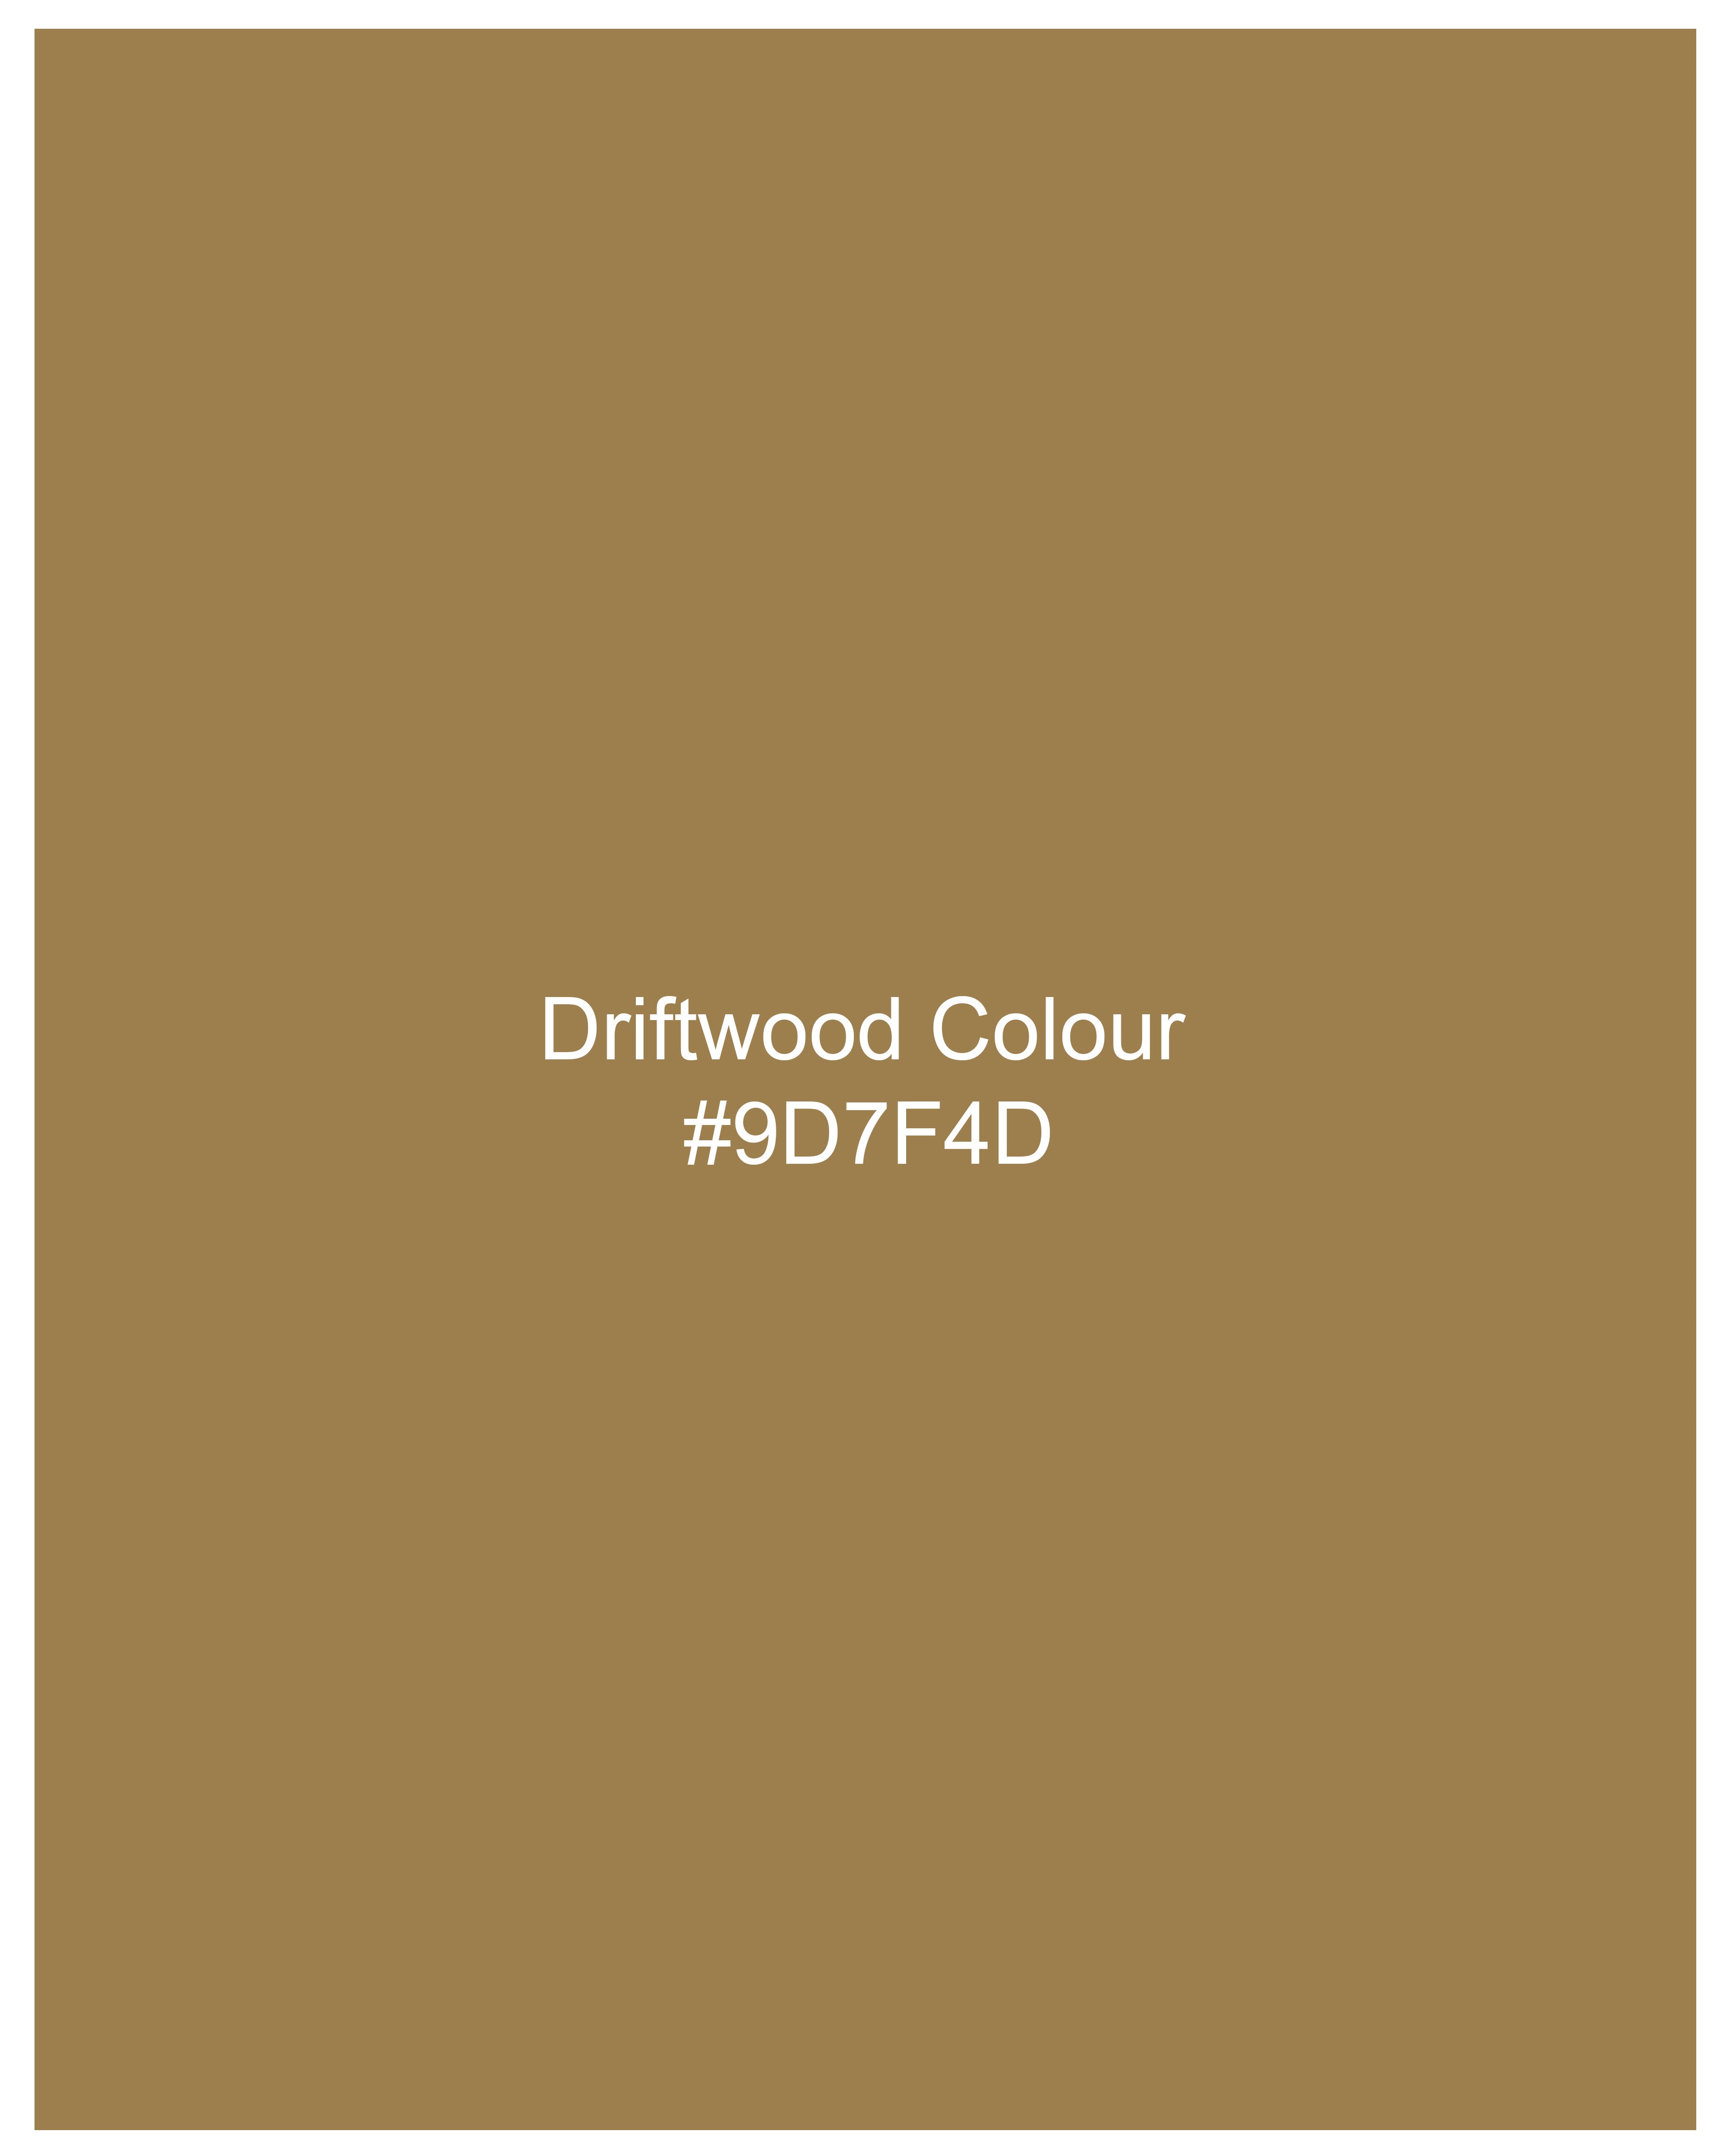 Driftwood Brown Twill Premium Cotton Designer Shirt 9977-MB-SS-P504-38, 9977-MB-SS-P504-39, 9977-MB-SS-P504-40, 9977-MB-SS-P504-42, 9977-MB-SS-P504-44, 9977-MB-SS-P504-46, 9977-MB-SS-P504-48, 9977-MB-SS-P504-50, 9977-MB-SS-P504-52